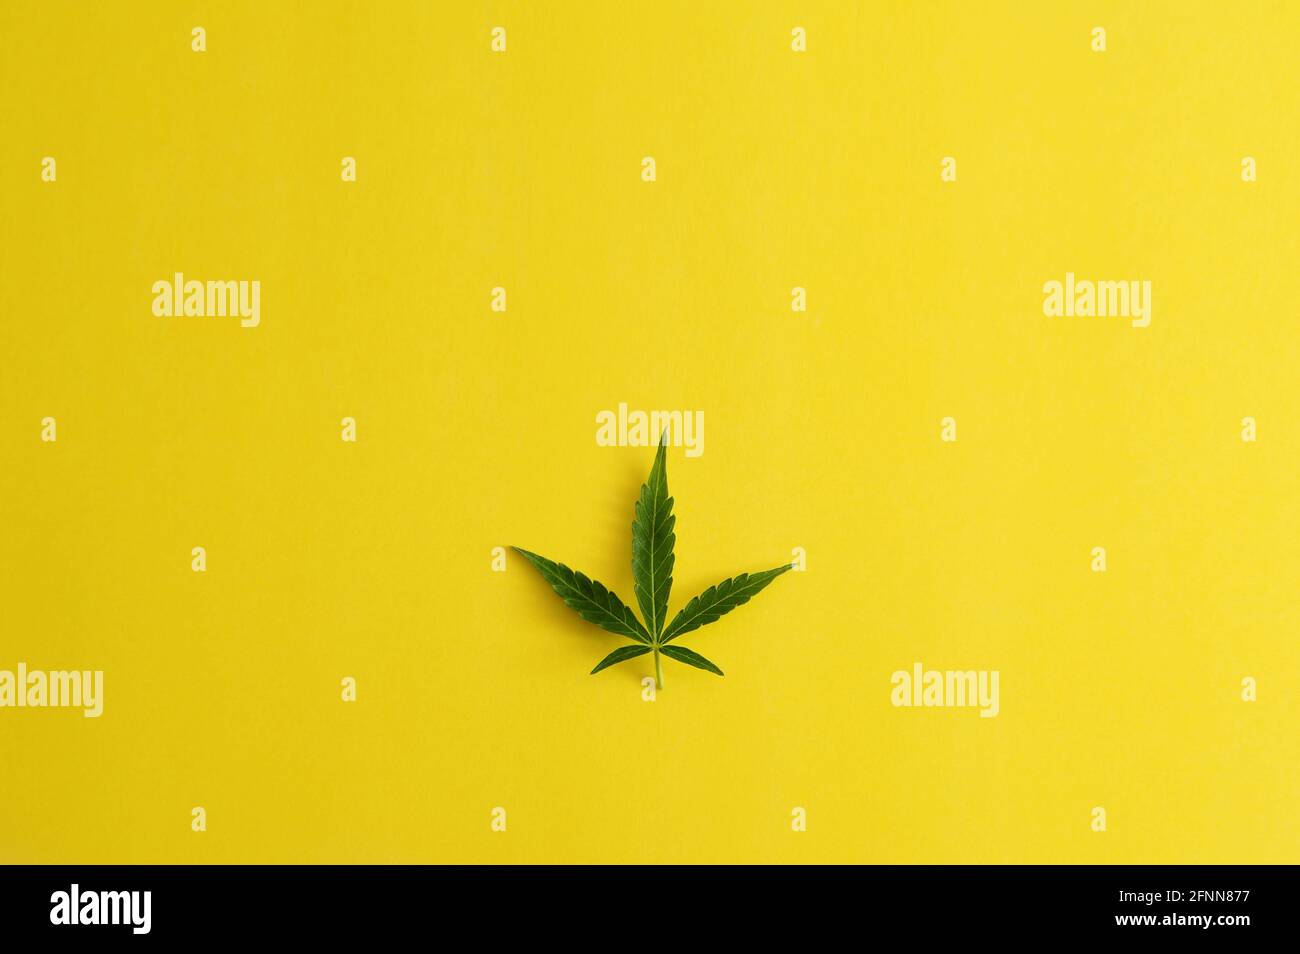 Marijuana leaf. Fresh cannabis plant on yellow background. Hemp recreation, medical usage. Weed legalization. Stock Photo